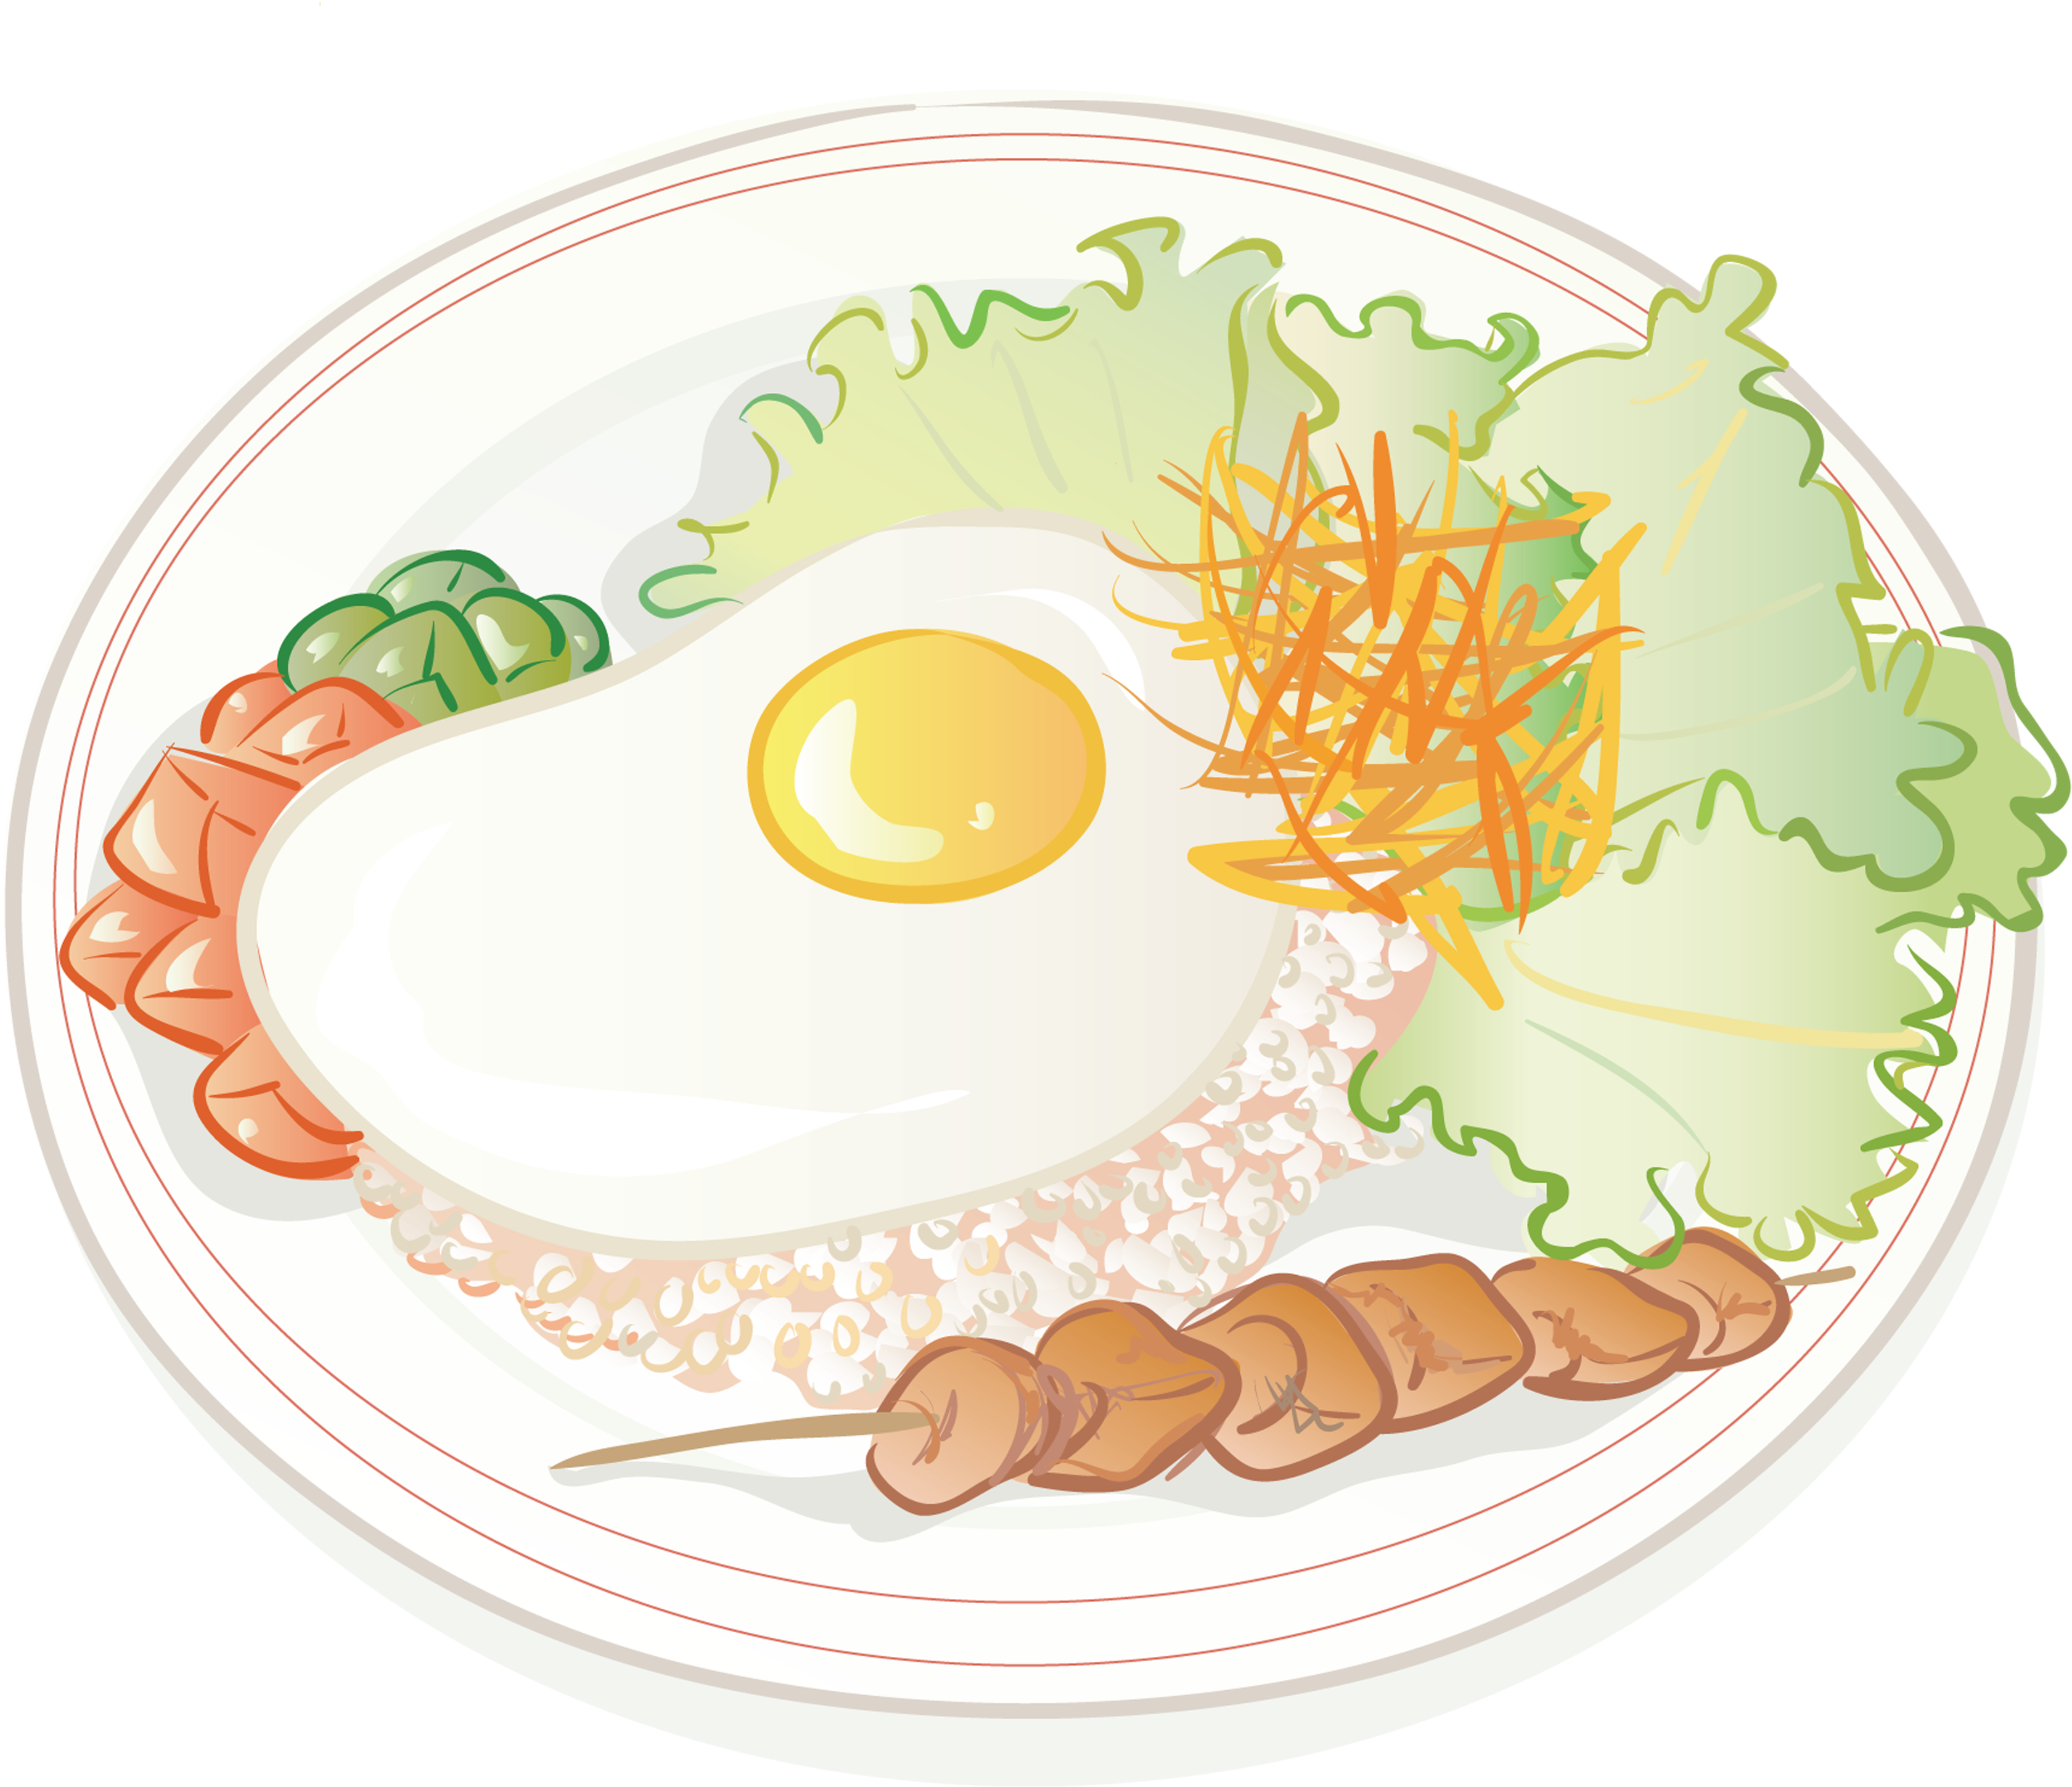 Phim hoạt hình trứng chiên và cơm chiên, ẩm thực Trung Quốc, đồ ăn